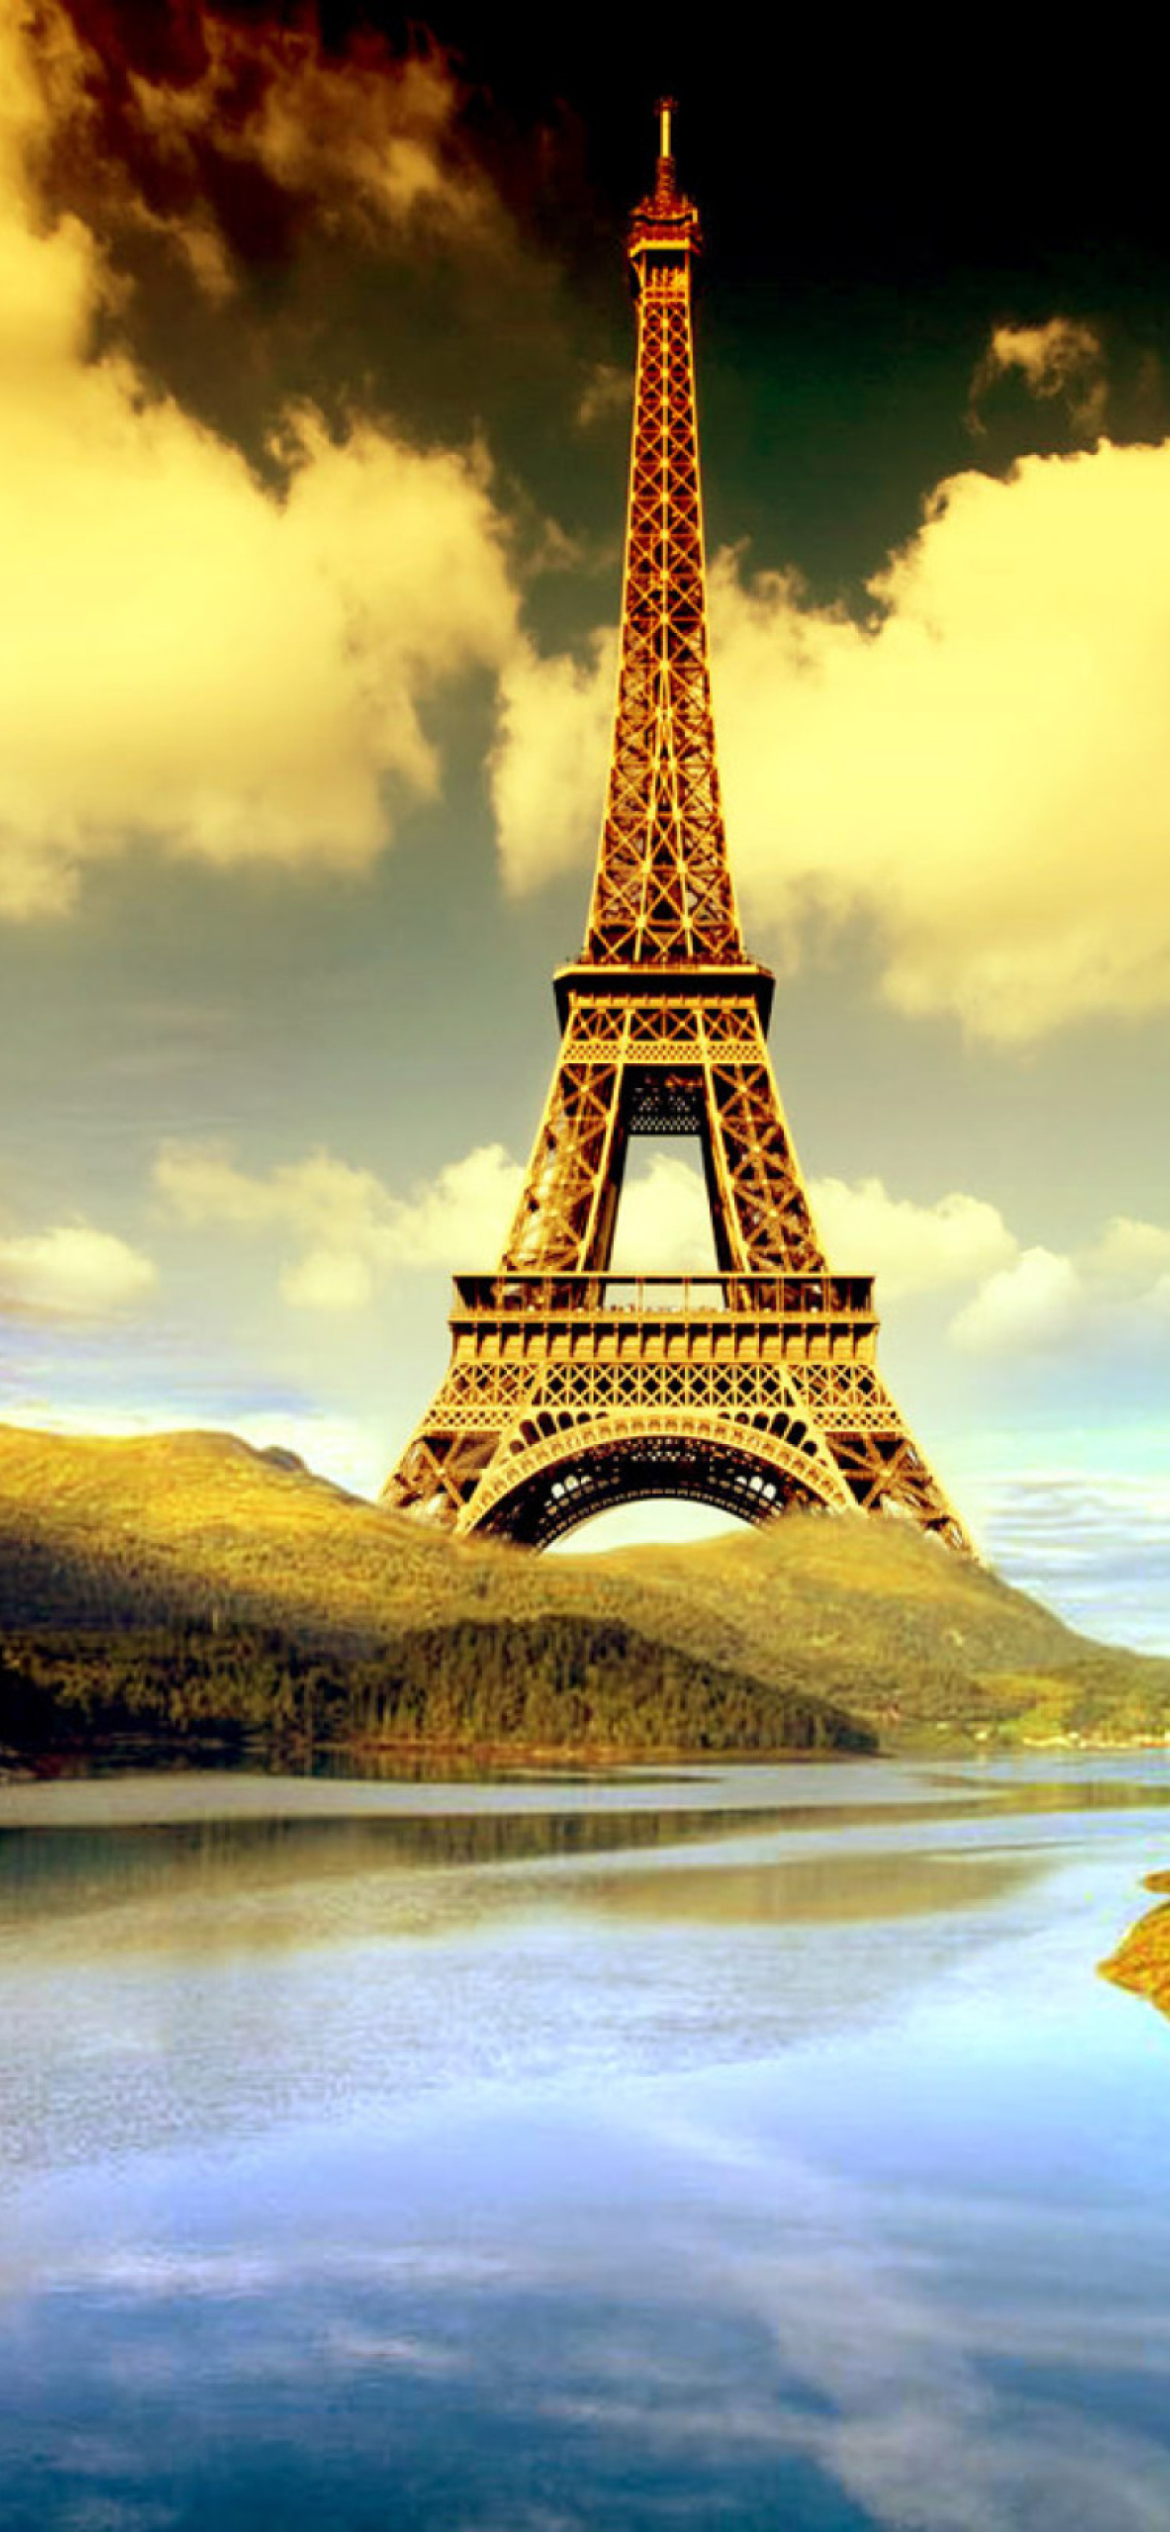 Sfondi Eiffel Tower Photo Manipulation 1170x2532